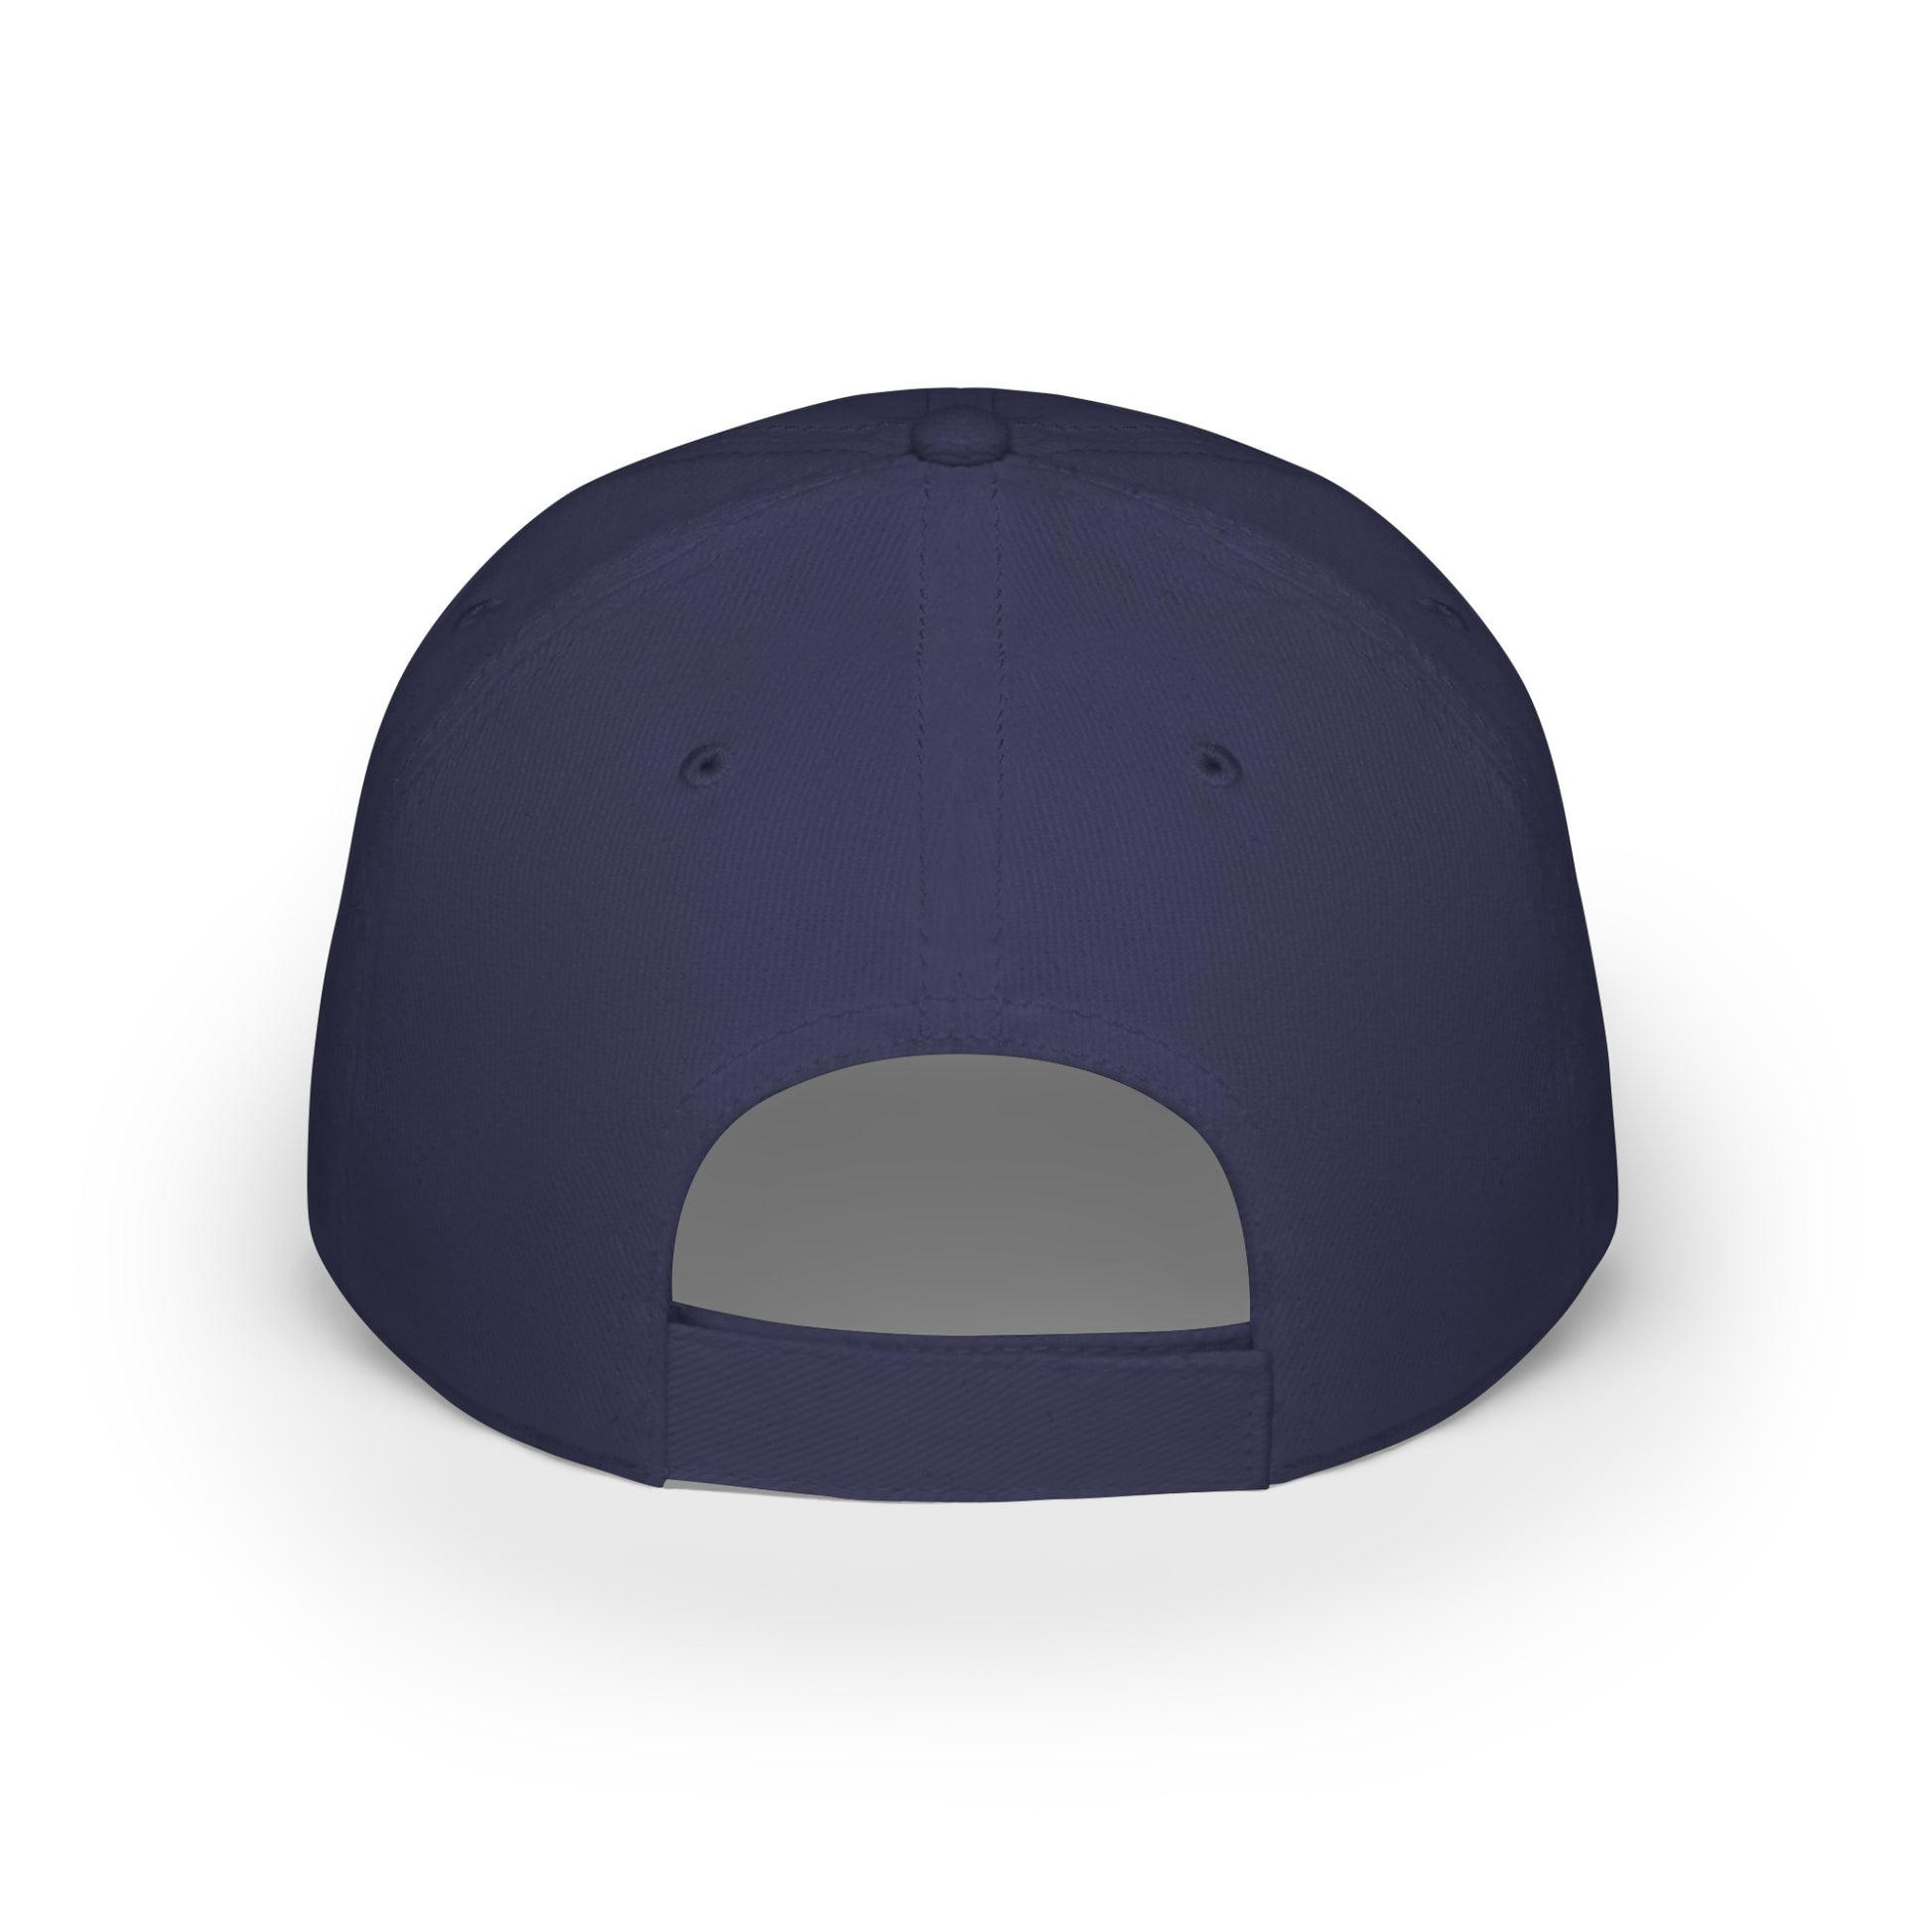 MDBTDJ#AJBBLUC - Low Profile Baseball Cap Tattooed Dj's Limited Edition, Hats, Tattooed Djs Shop